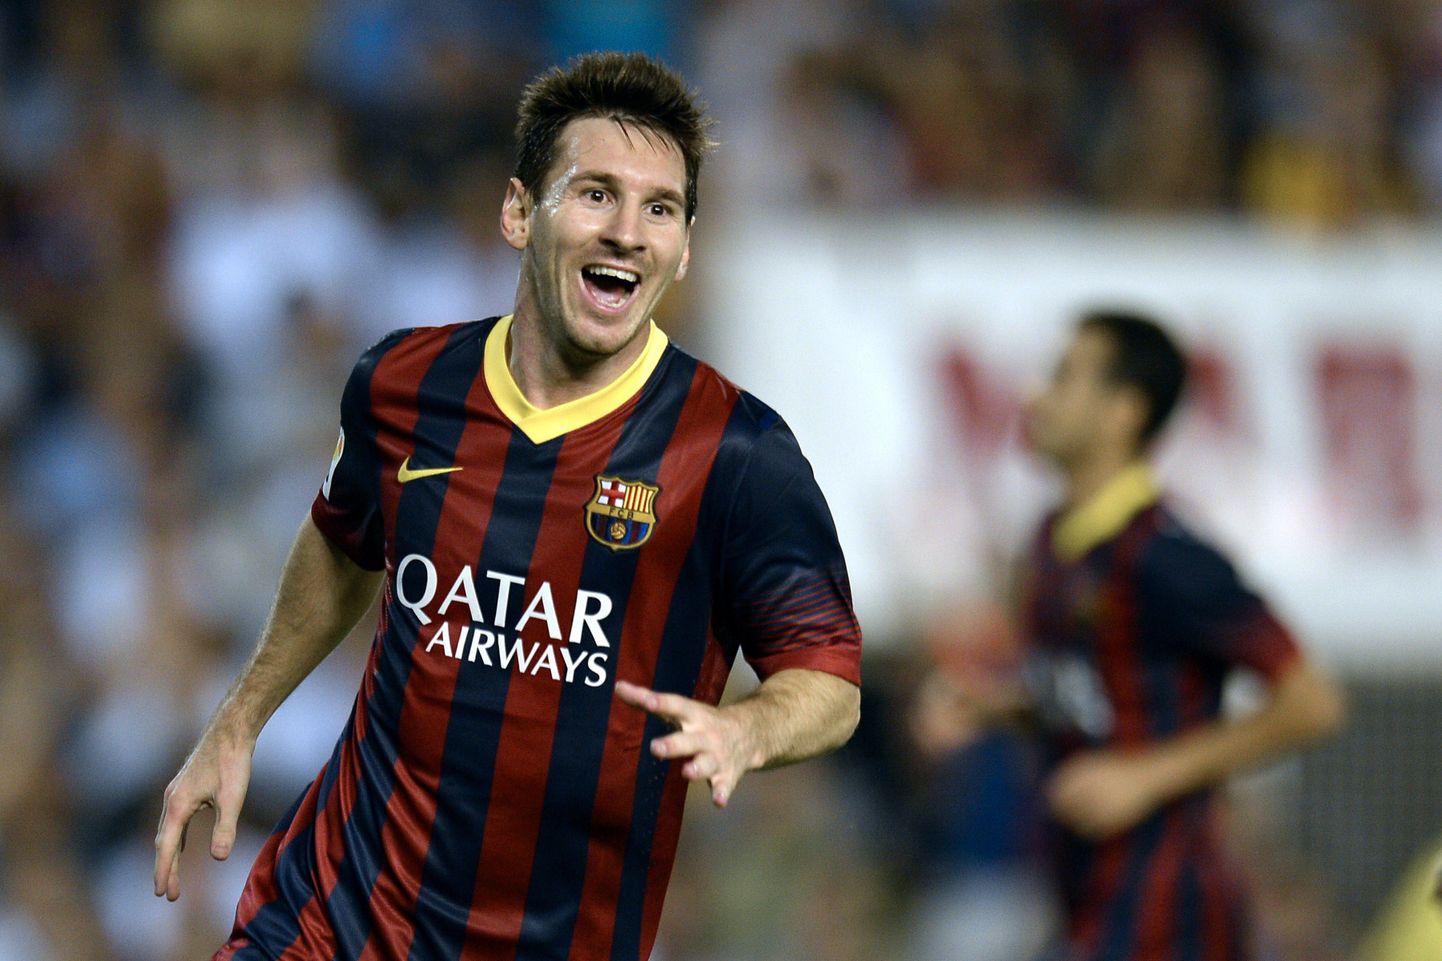 Нападающий испанского футбольного клуба «Барселона» Лионель Месси сделал хет-трик за полчаса игрового времени в матче третьего тура чемпионата Испании с «Валенсией».